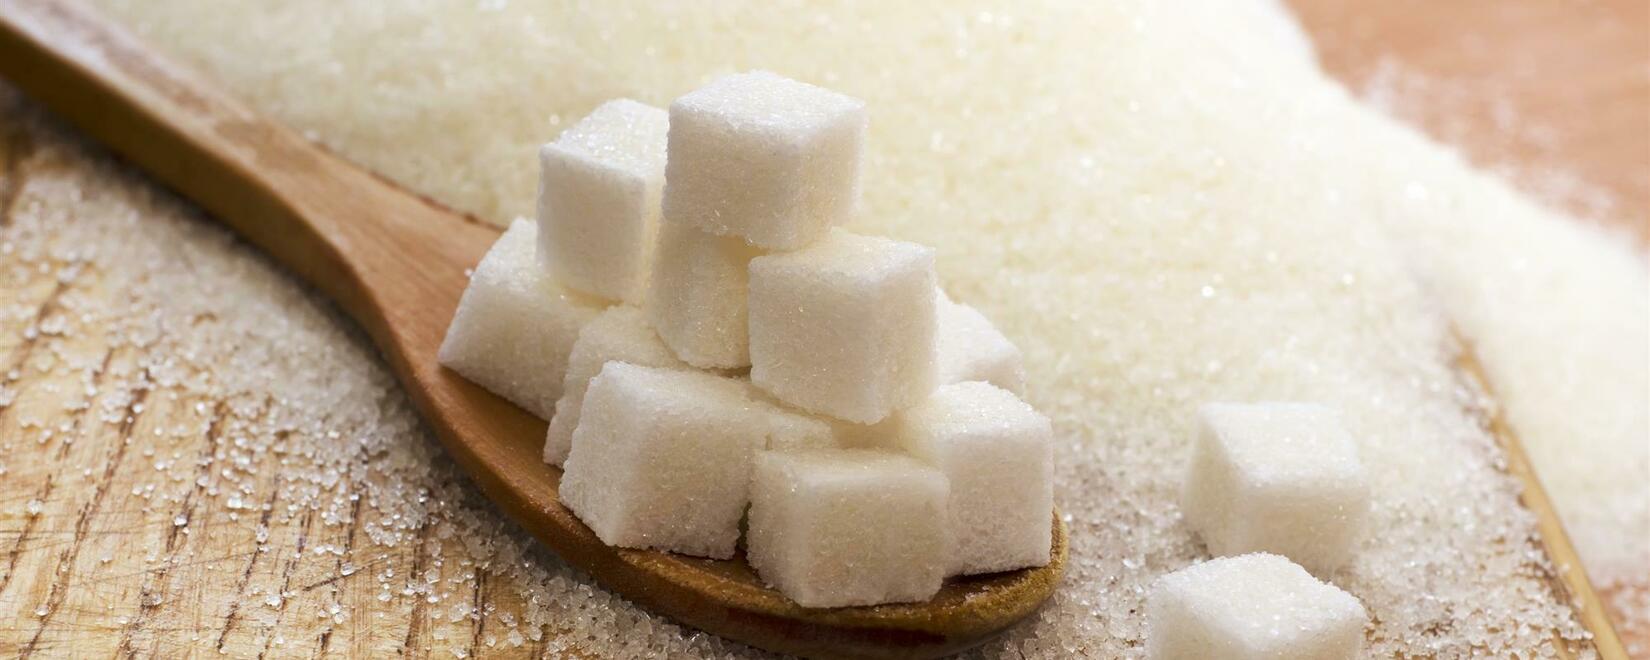 Иран: Годовой объем производства сахара превышает 1,4 млн. тонн 